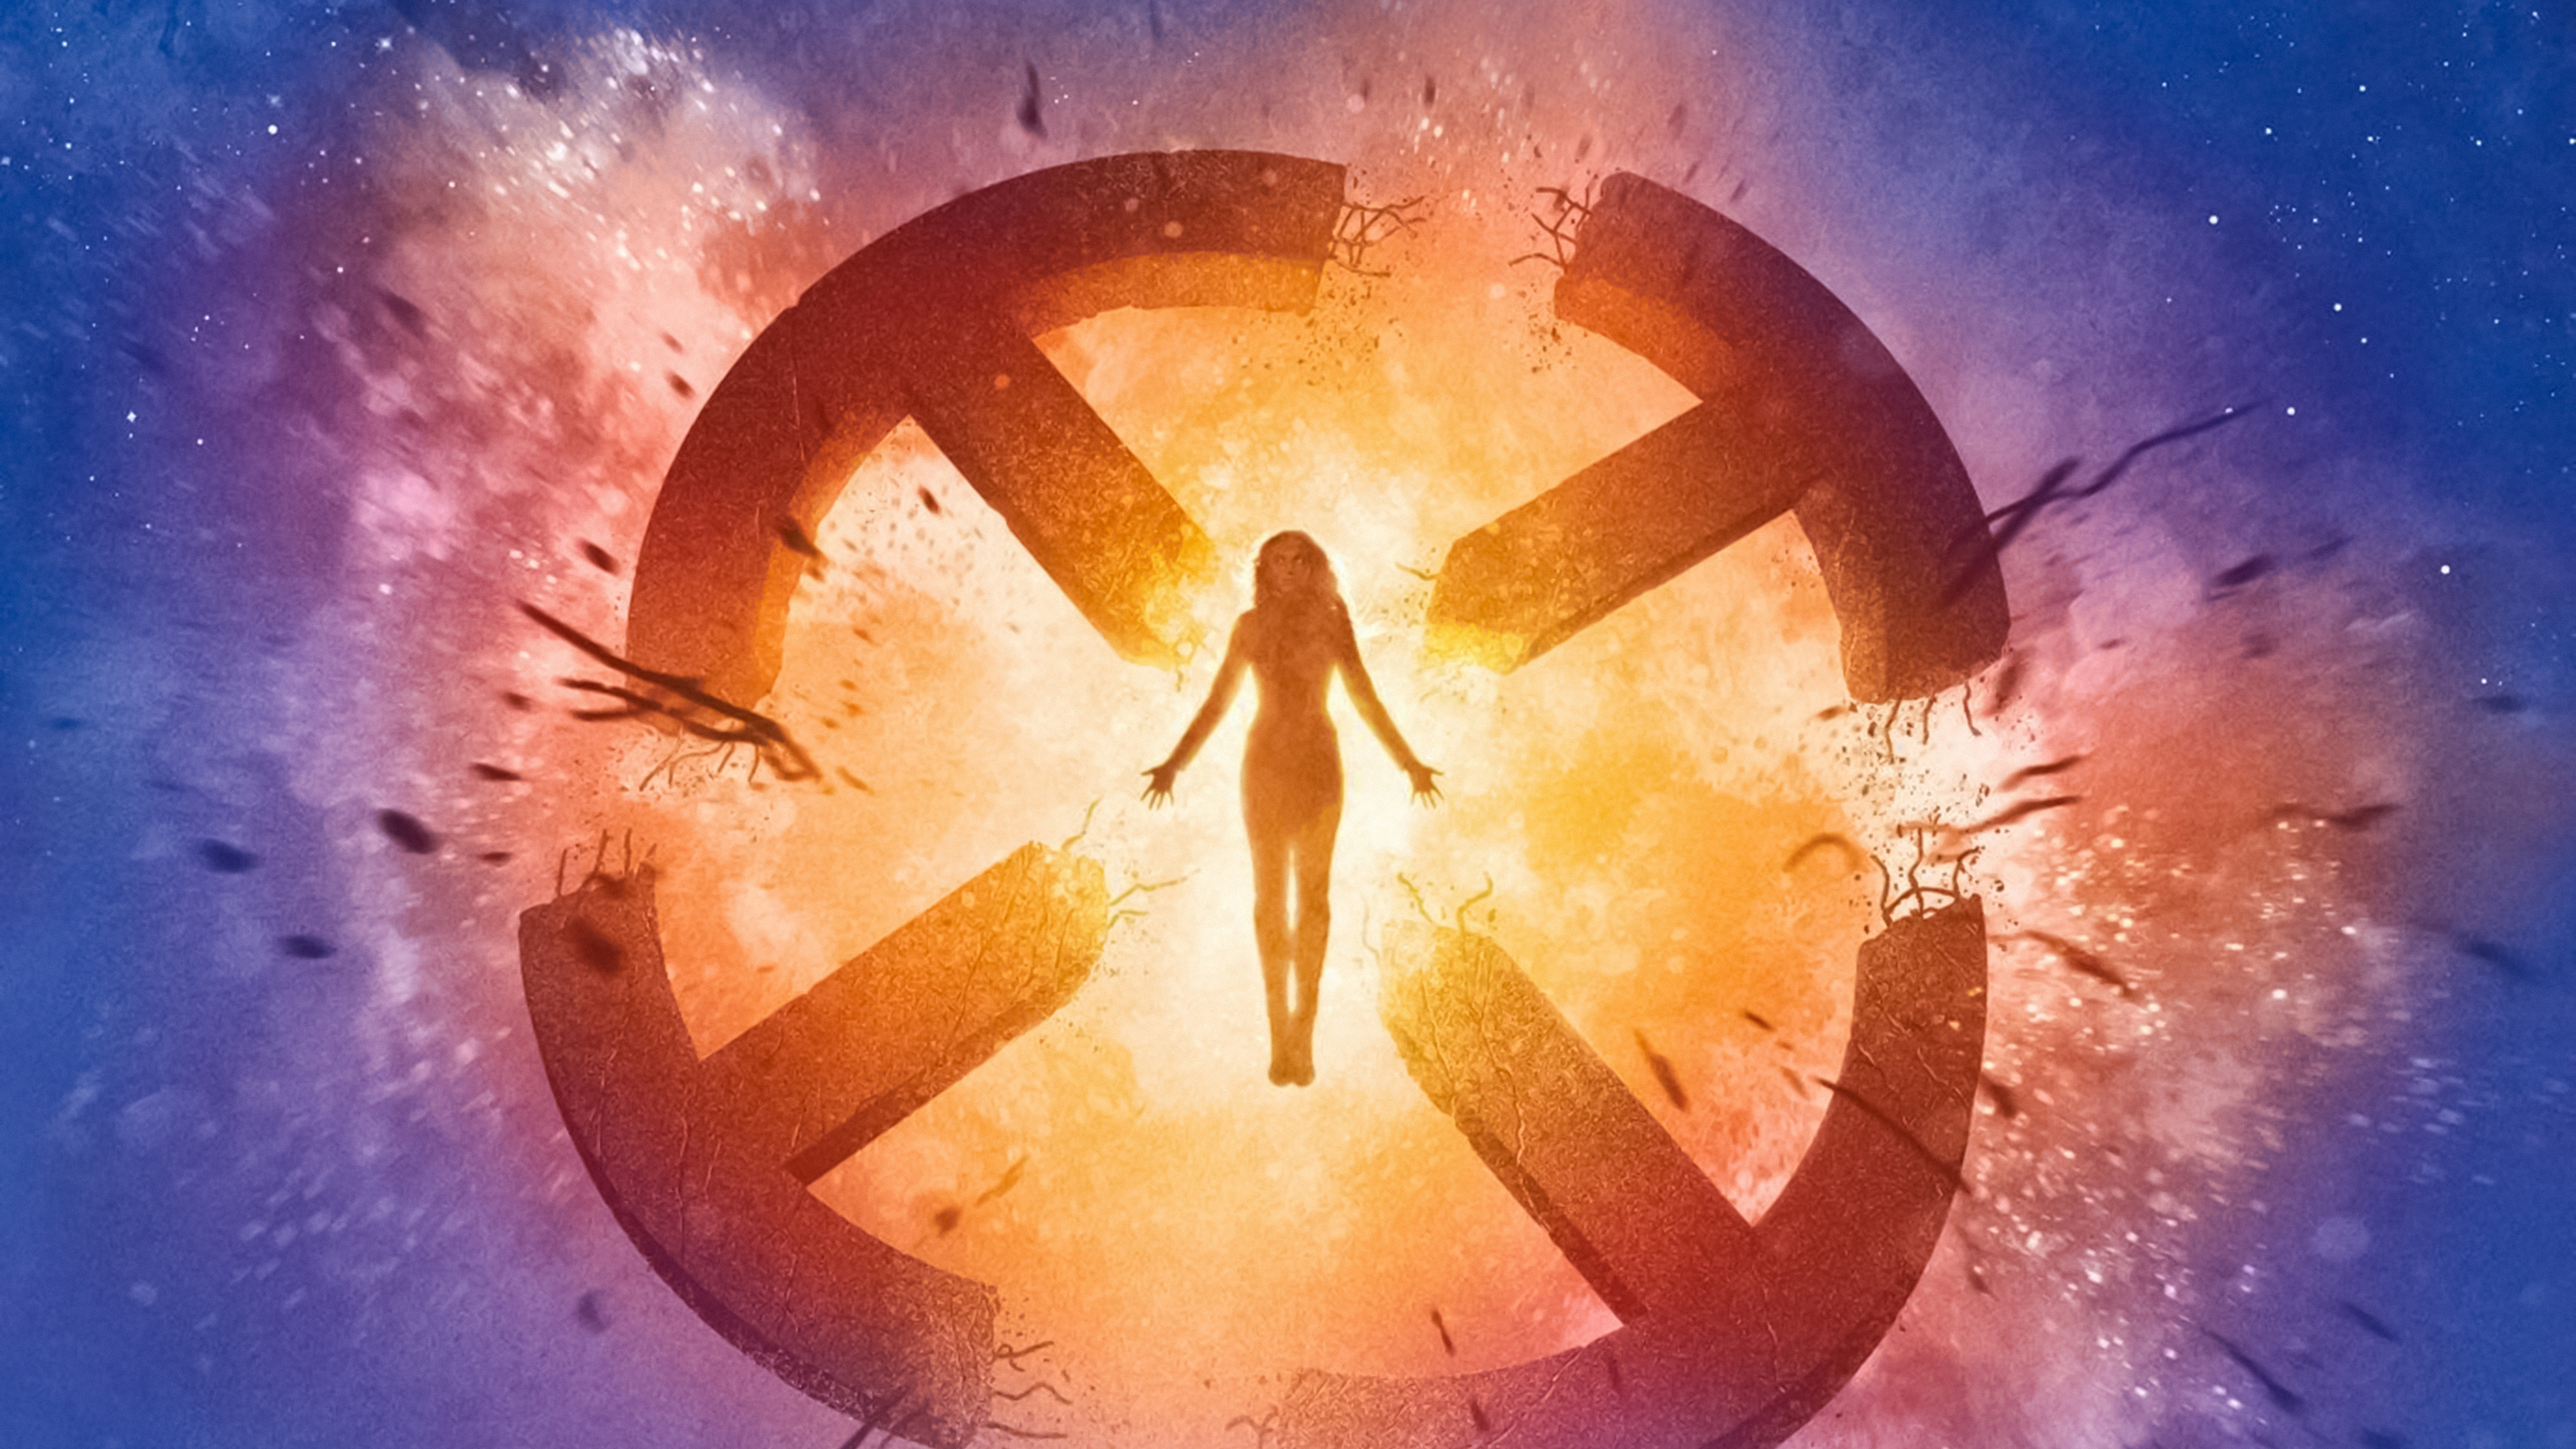 X Men Dark Phoenix Background , HD Wallpaper & Backgrounds